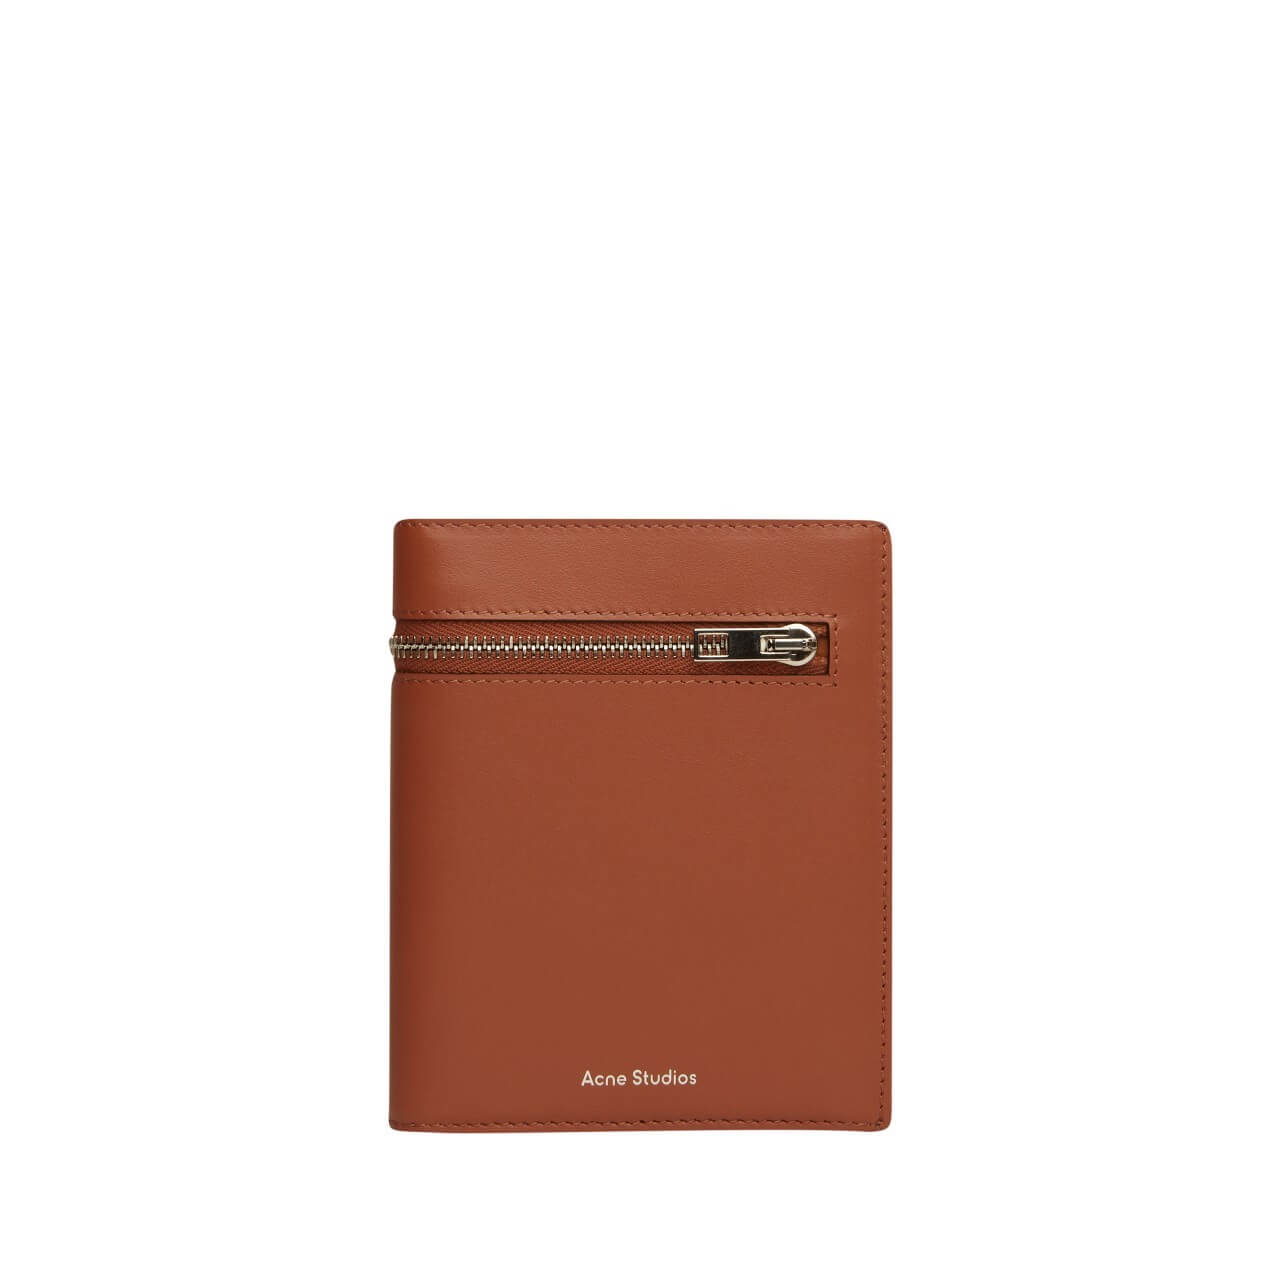 アクネ ストゥディオズの新作レザーアイテムに注目！【バッグ・財布・カードケース】 | LEE